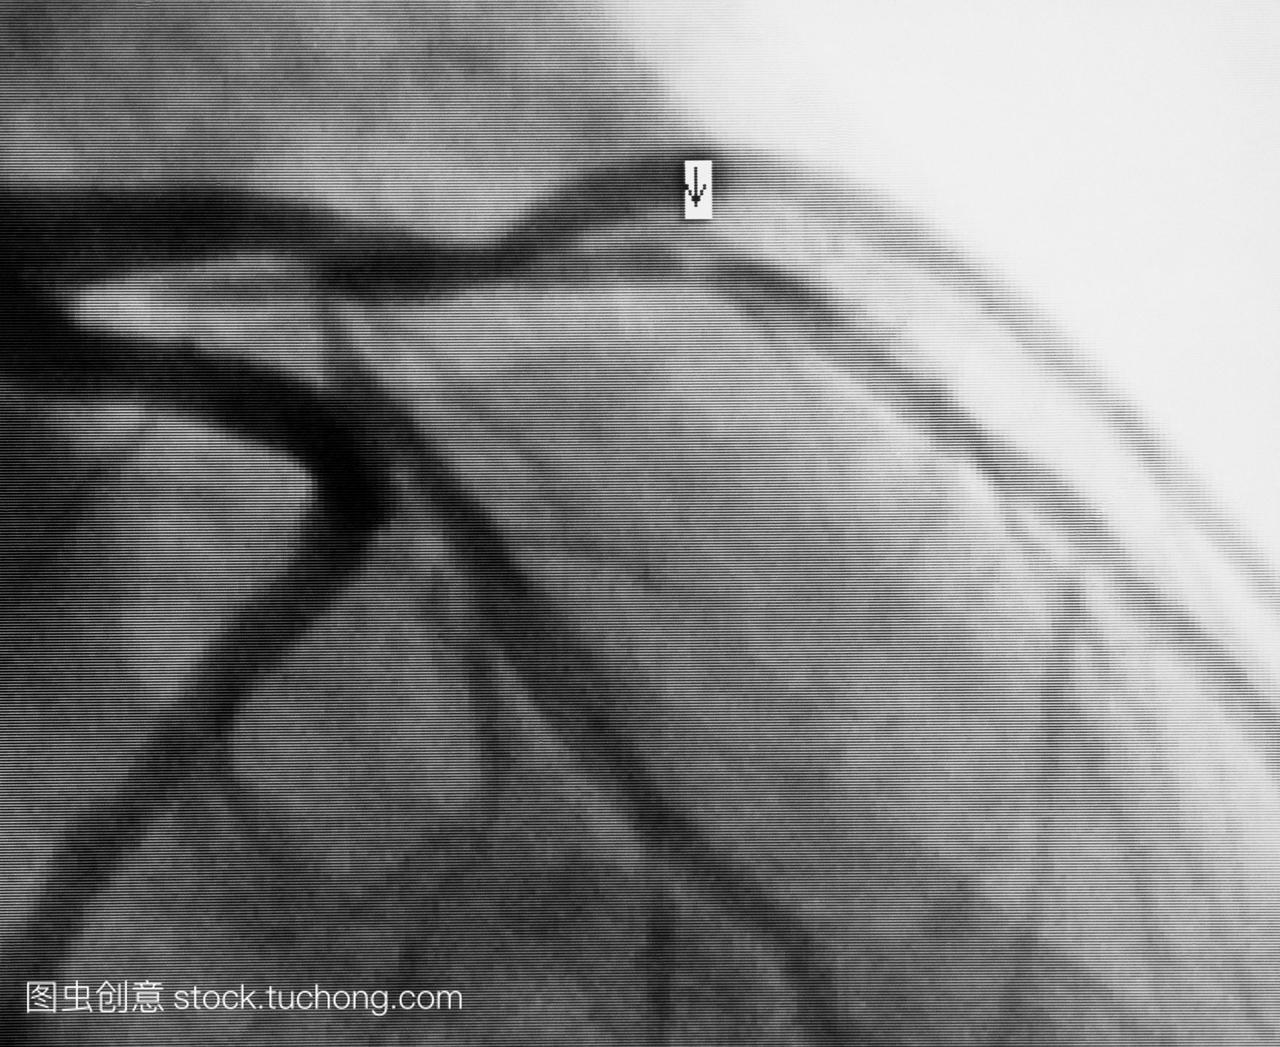 血管造影动脉波的成年人类心脏显示狭窄阻塞带